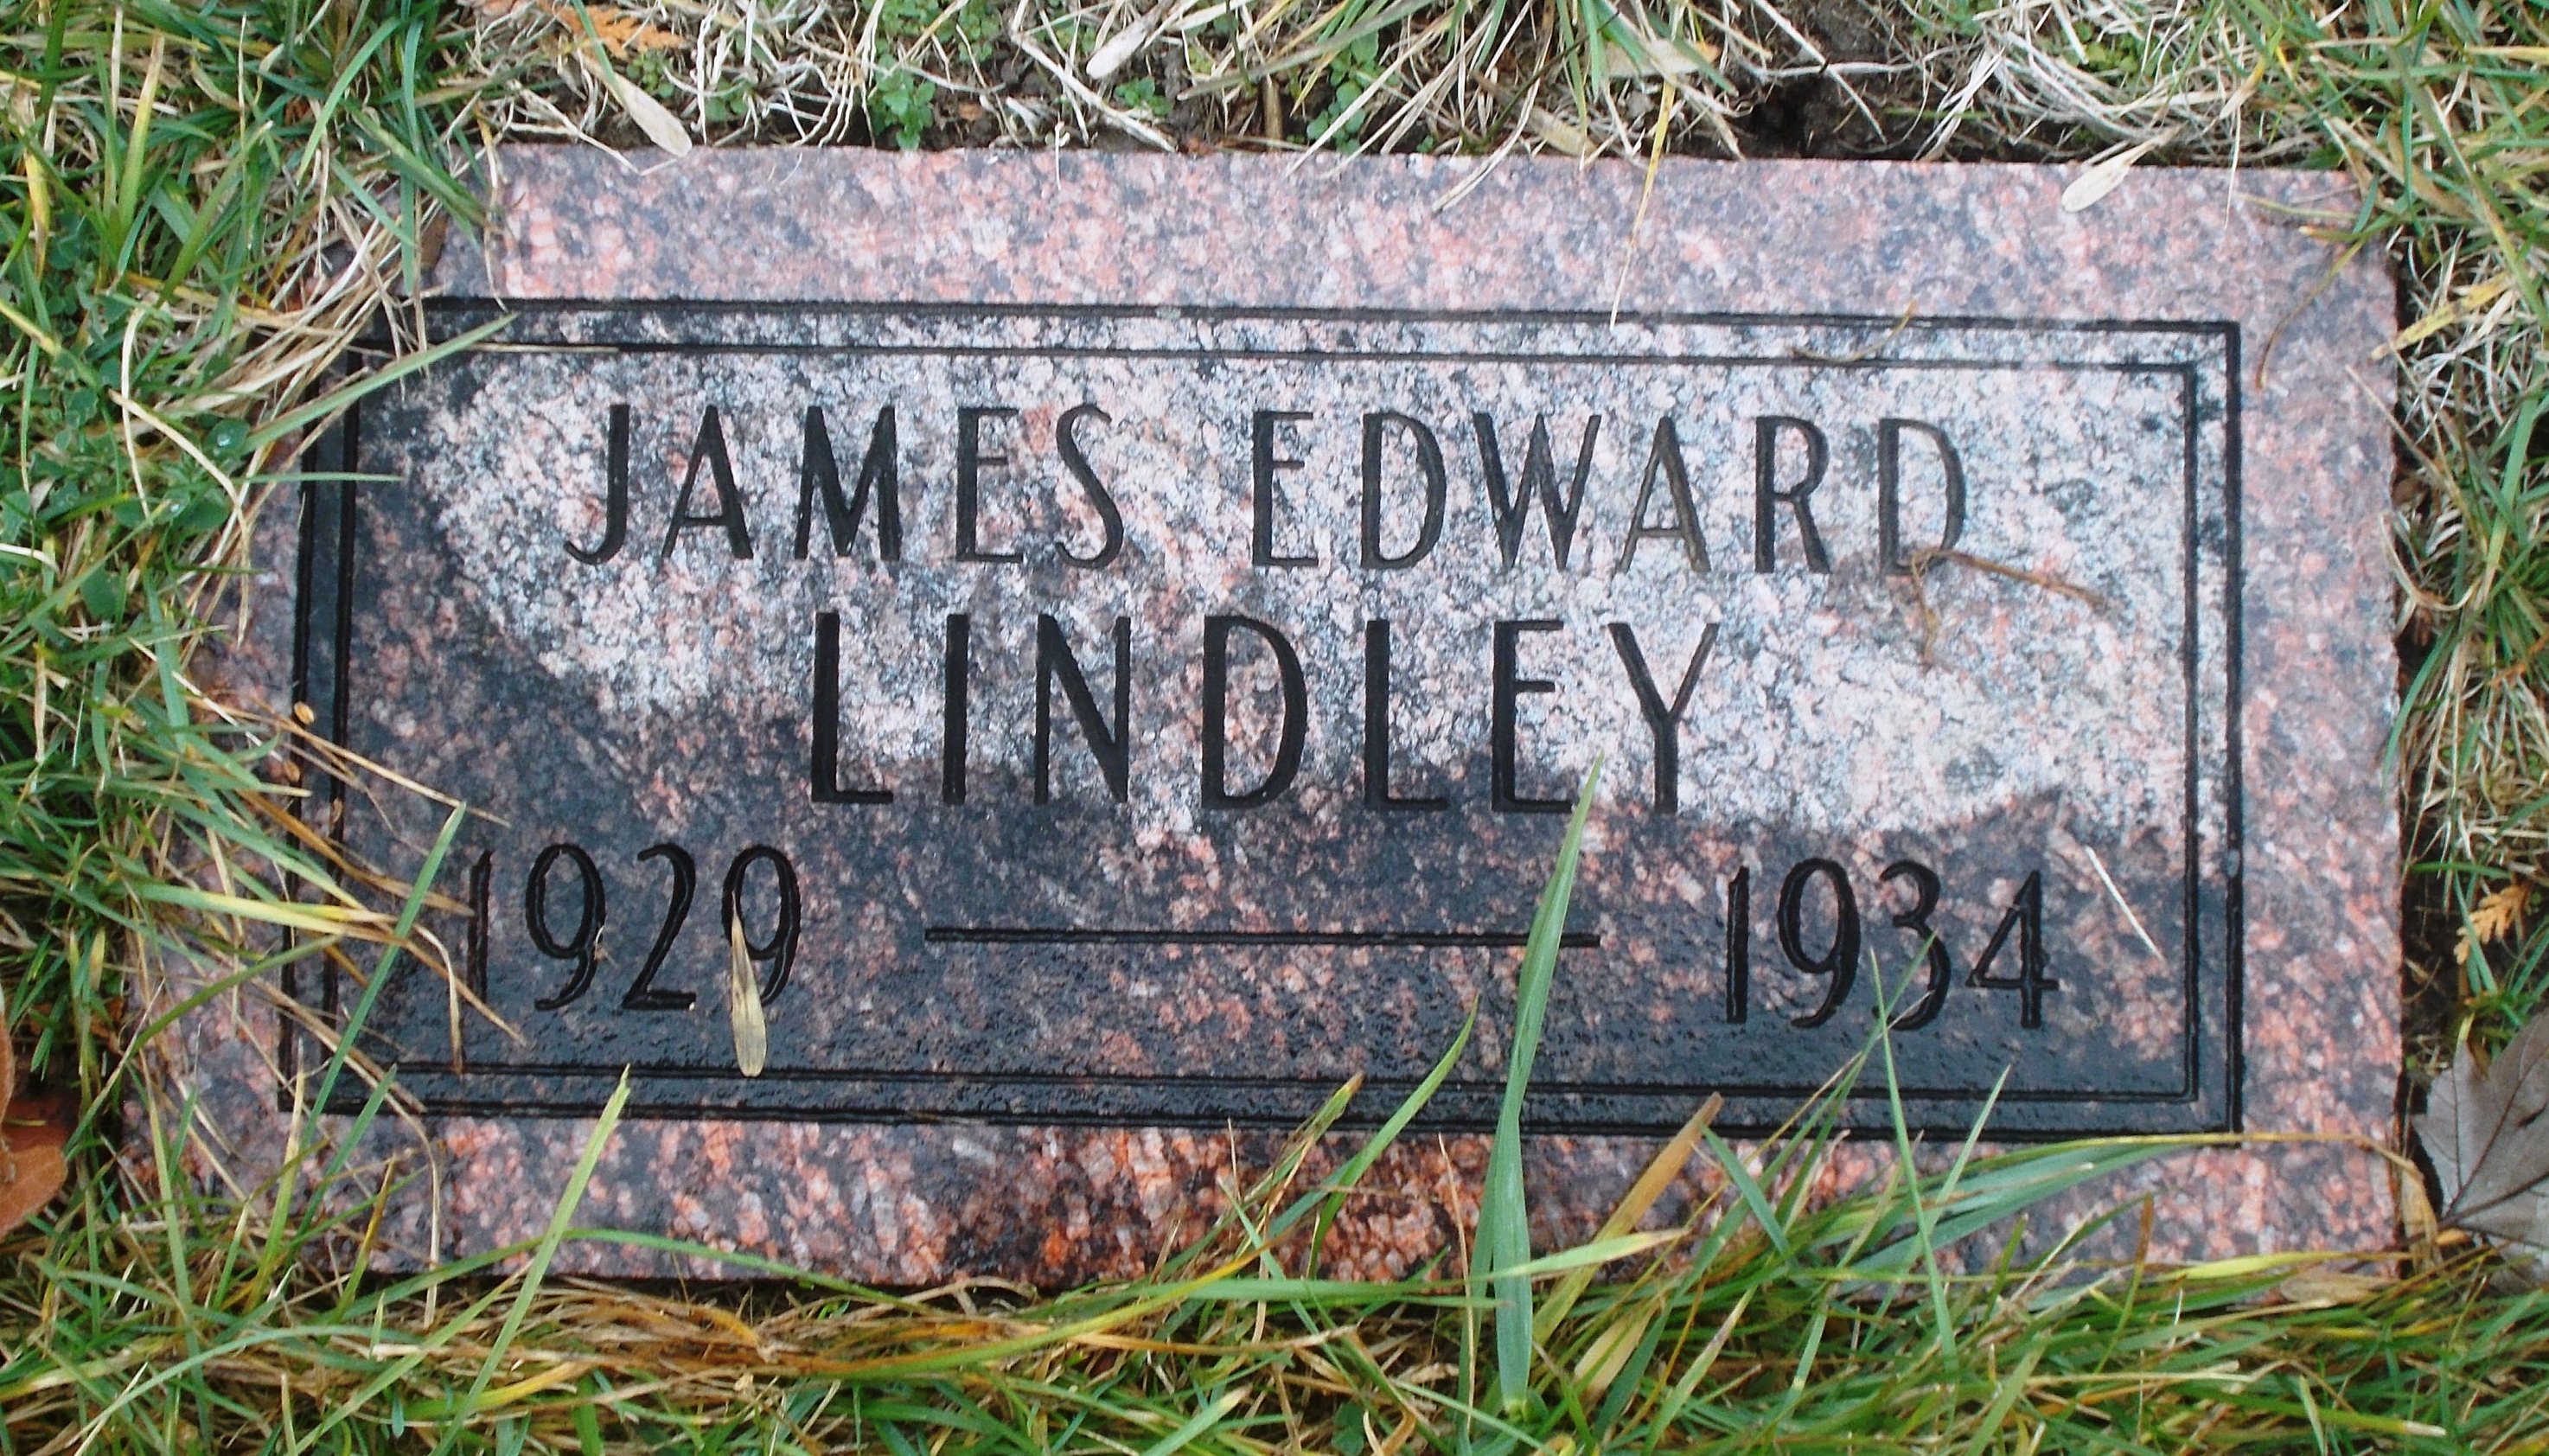 James Edward Lindley